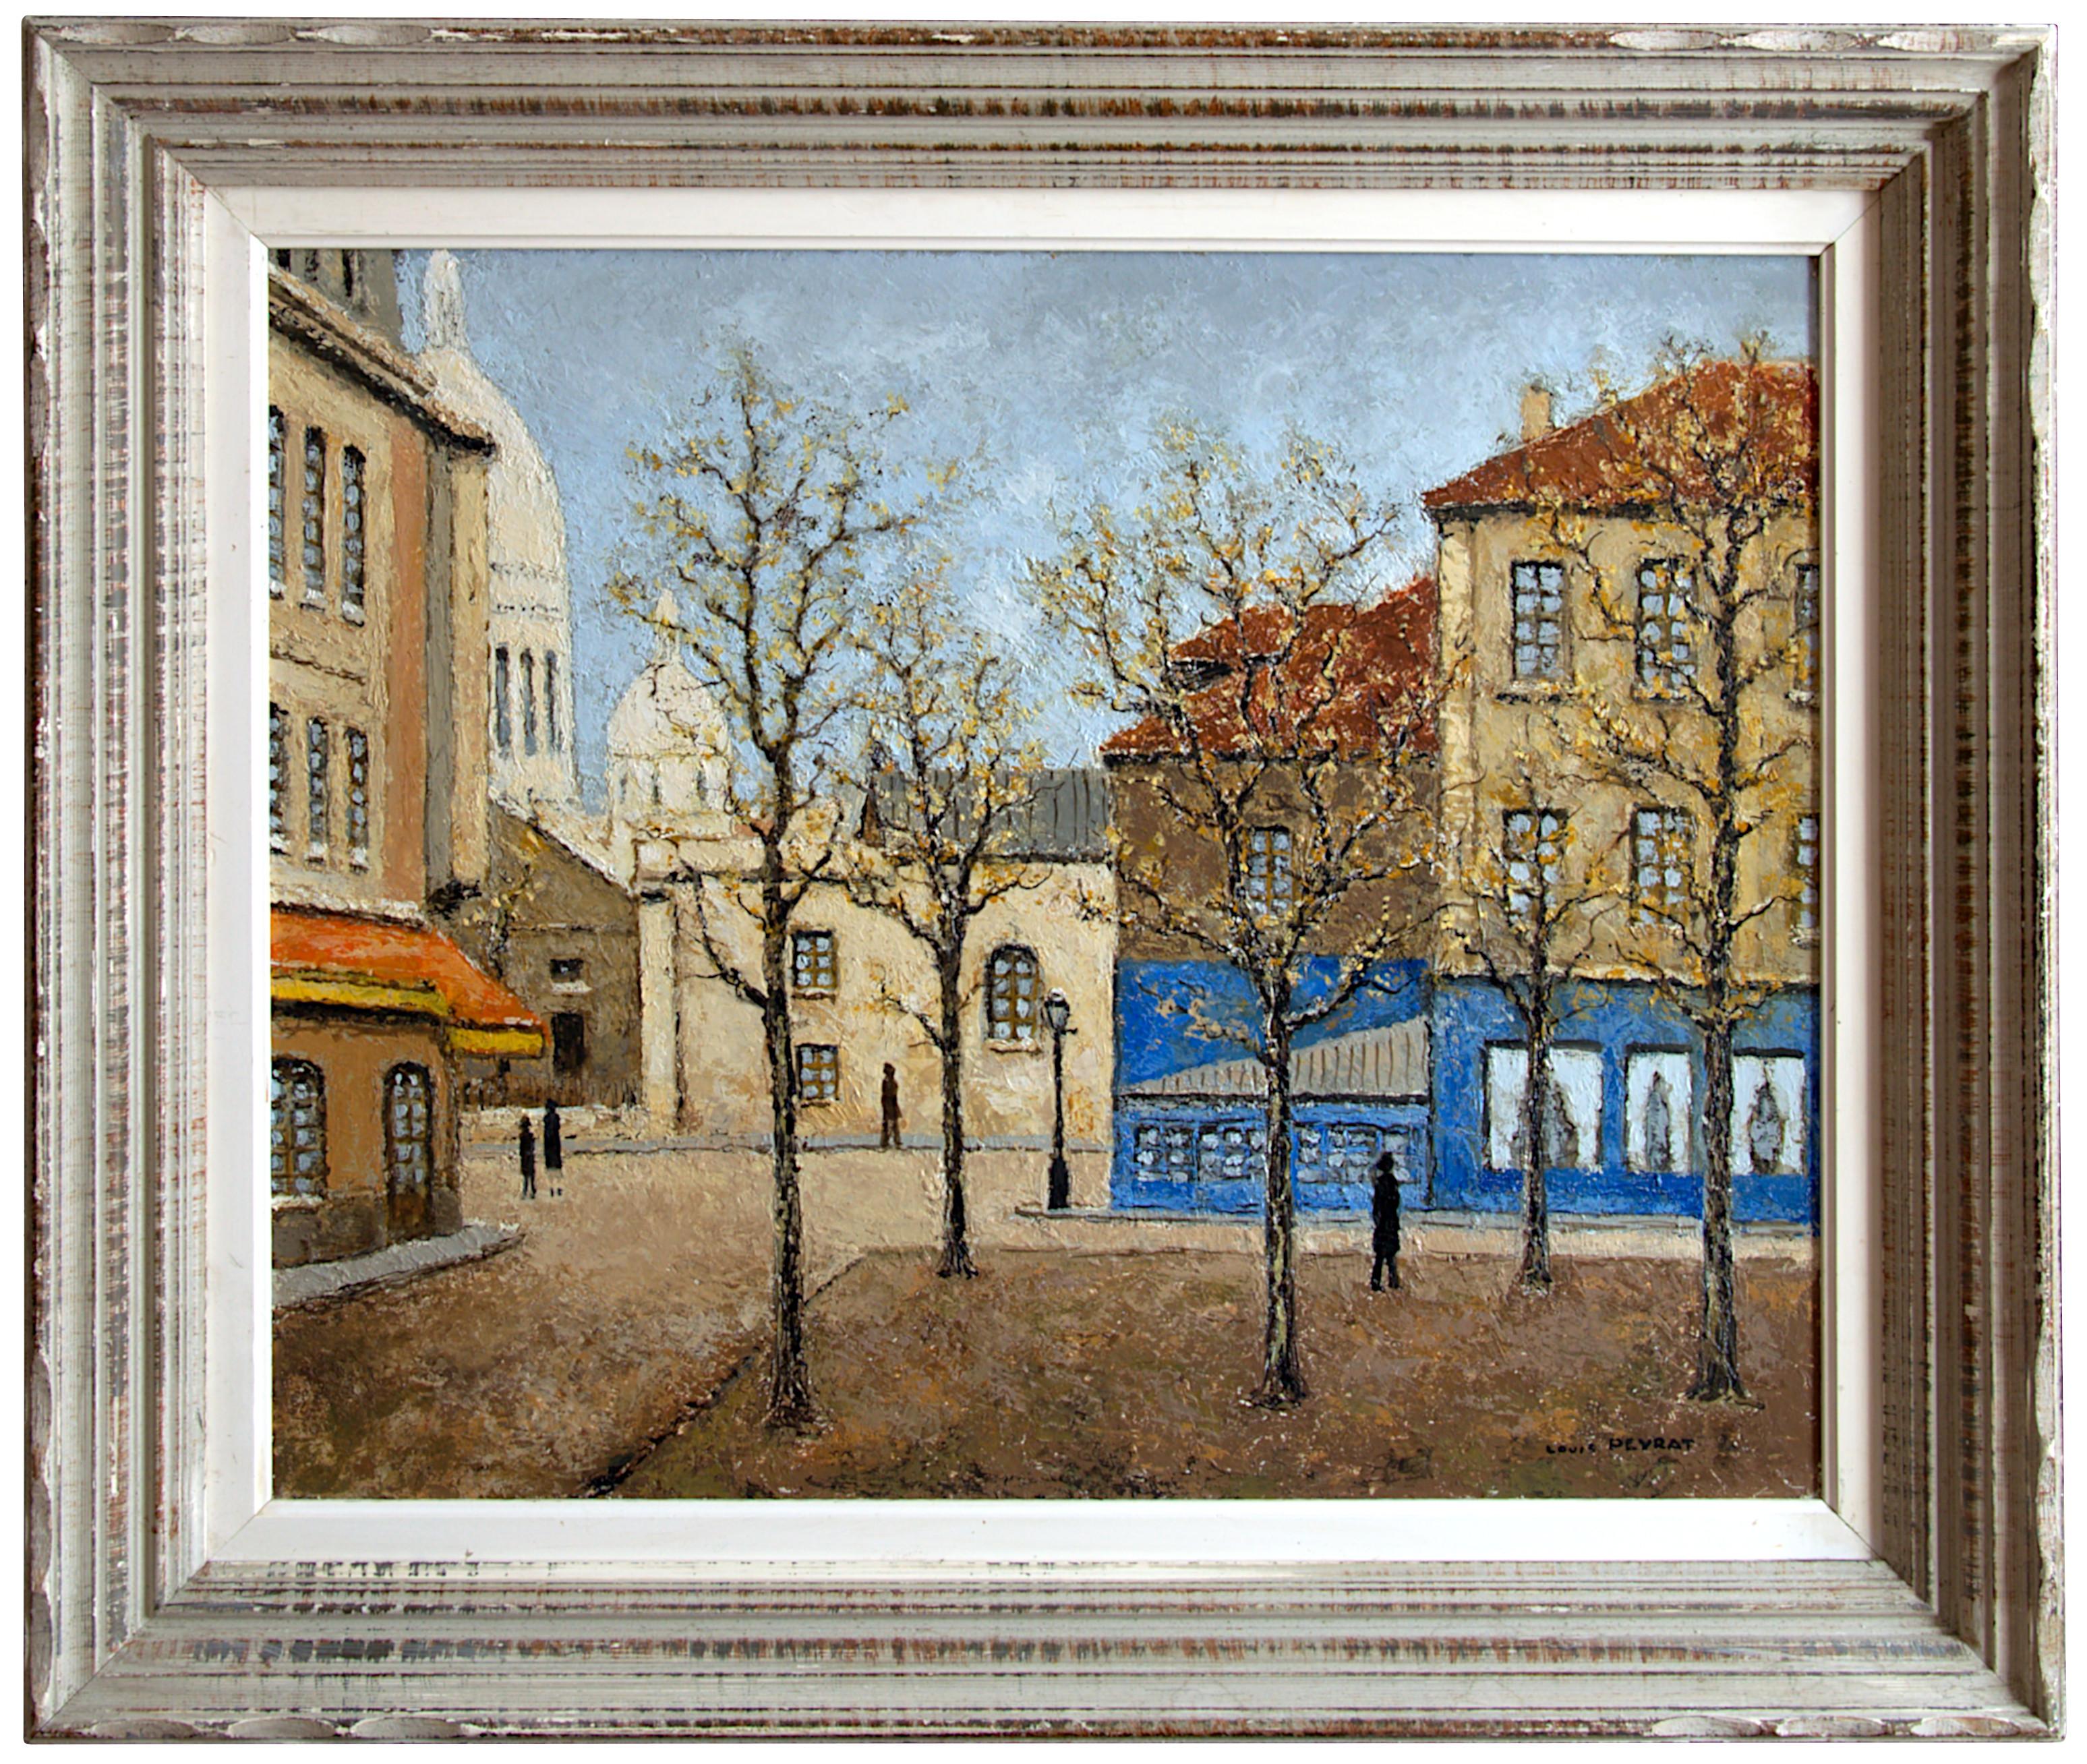 Place du Tertre, Montmartre, Paris - Painting by Louis Peyrat